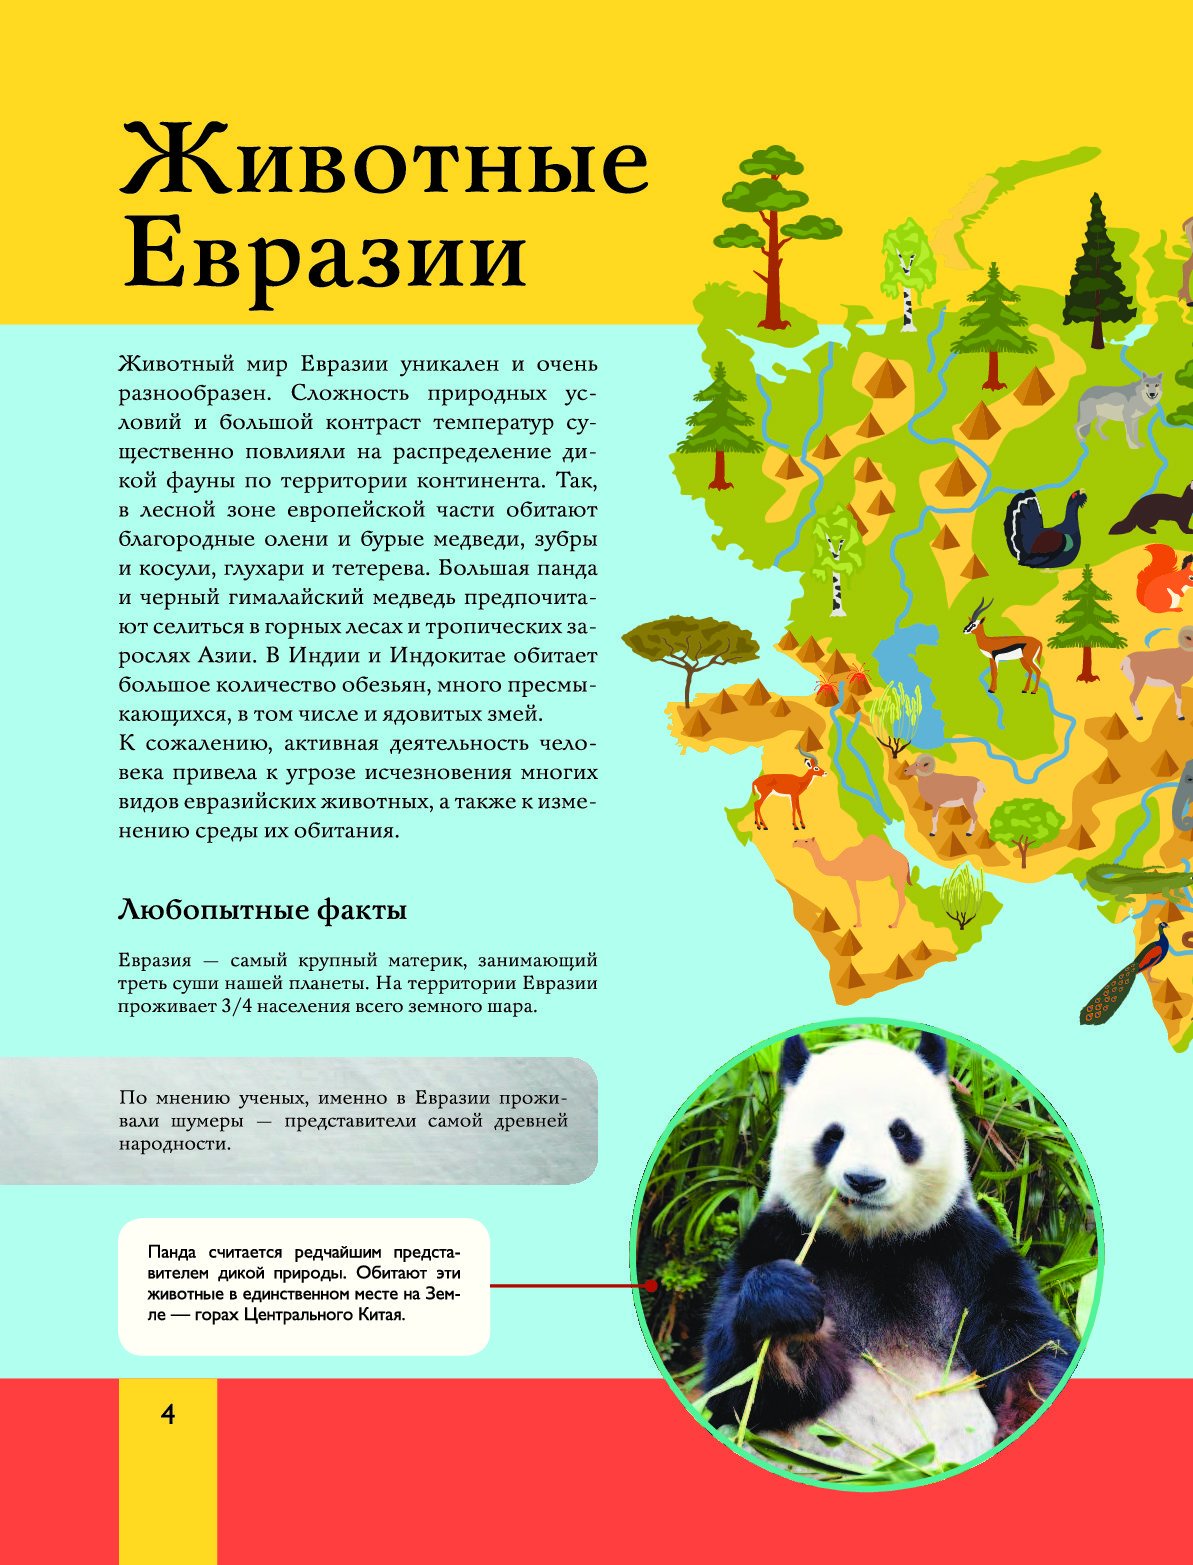 Северная евразия животный мир. Животный мир Евразии. Животное Евразии. Животные мир Евразии. Животные Евразии для детей.